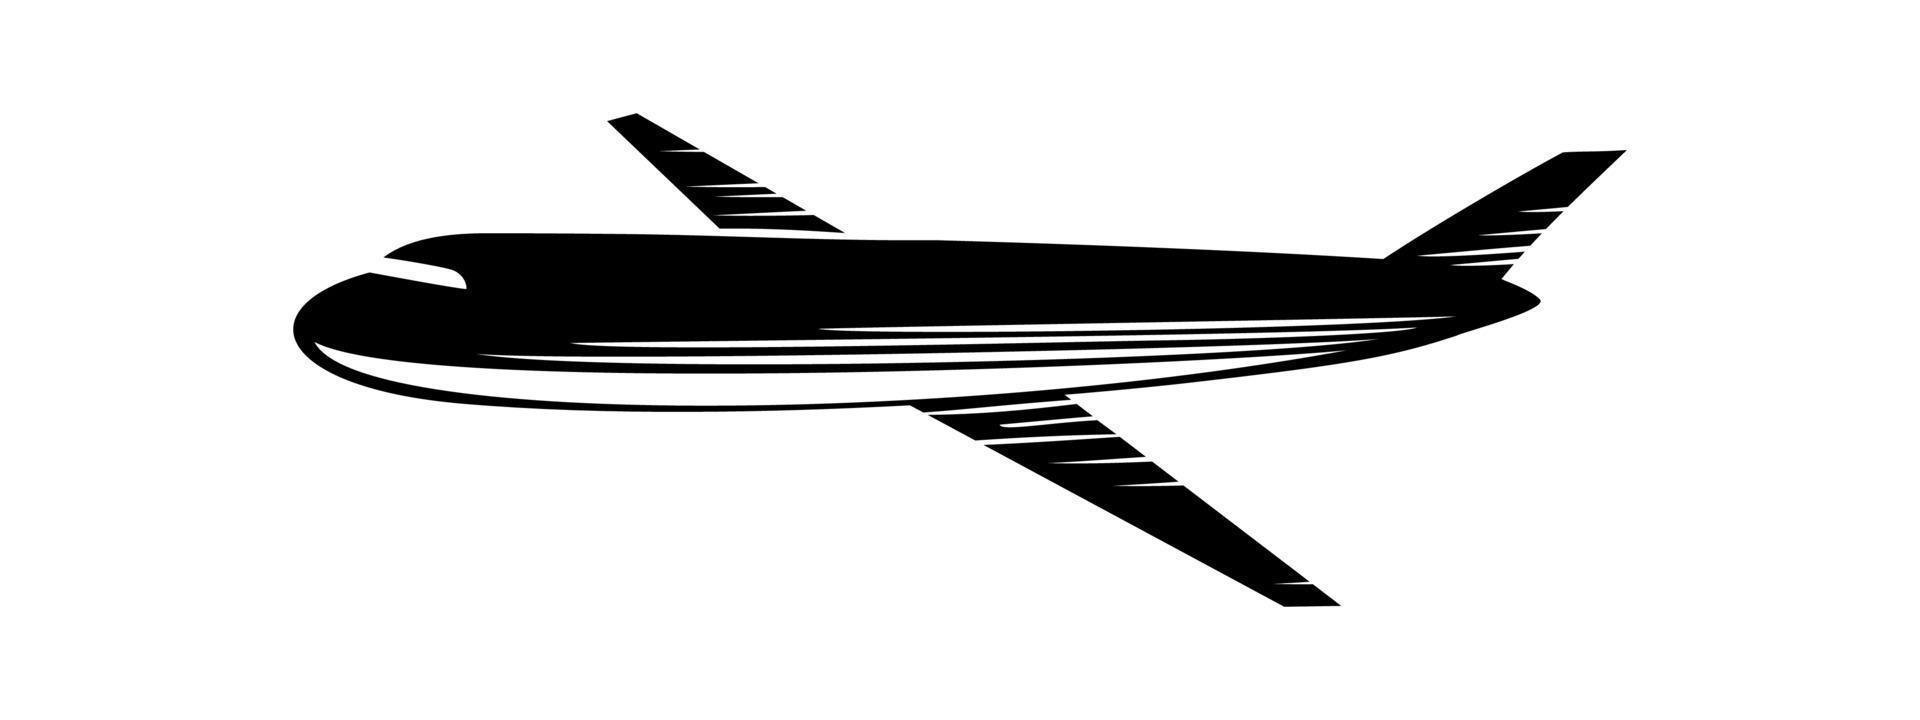 diseño de silueta de avión. icono, signo y símbolo del avión. ilustración vectorial de transporte aéreo. vector